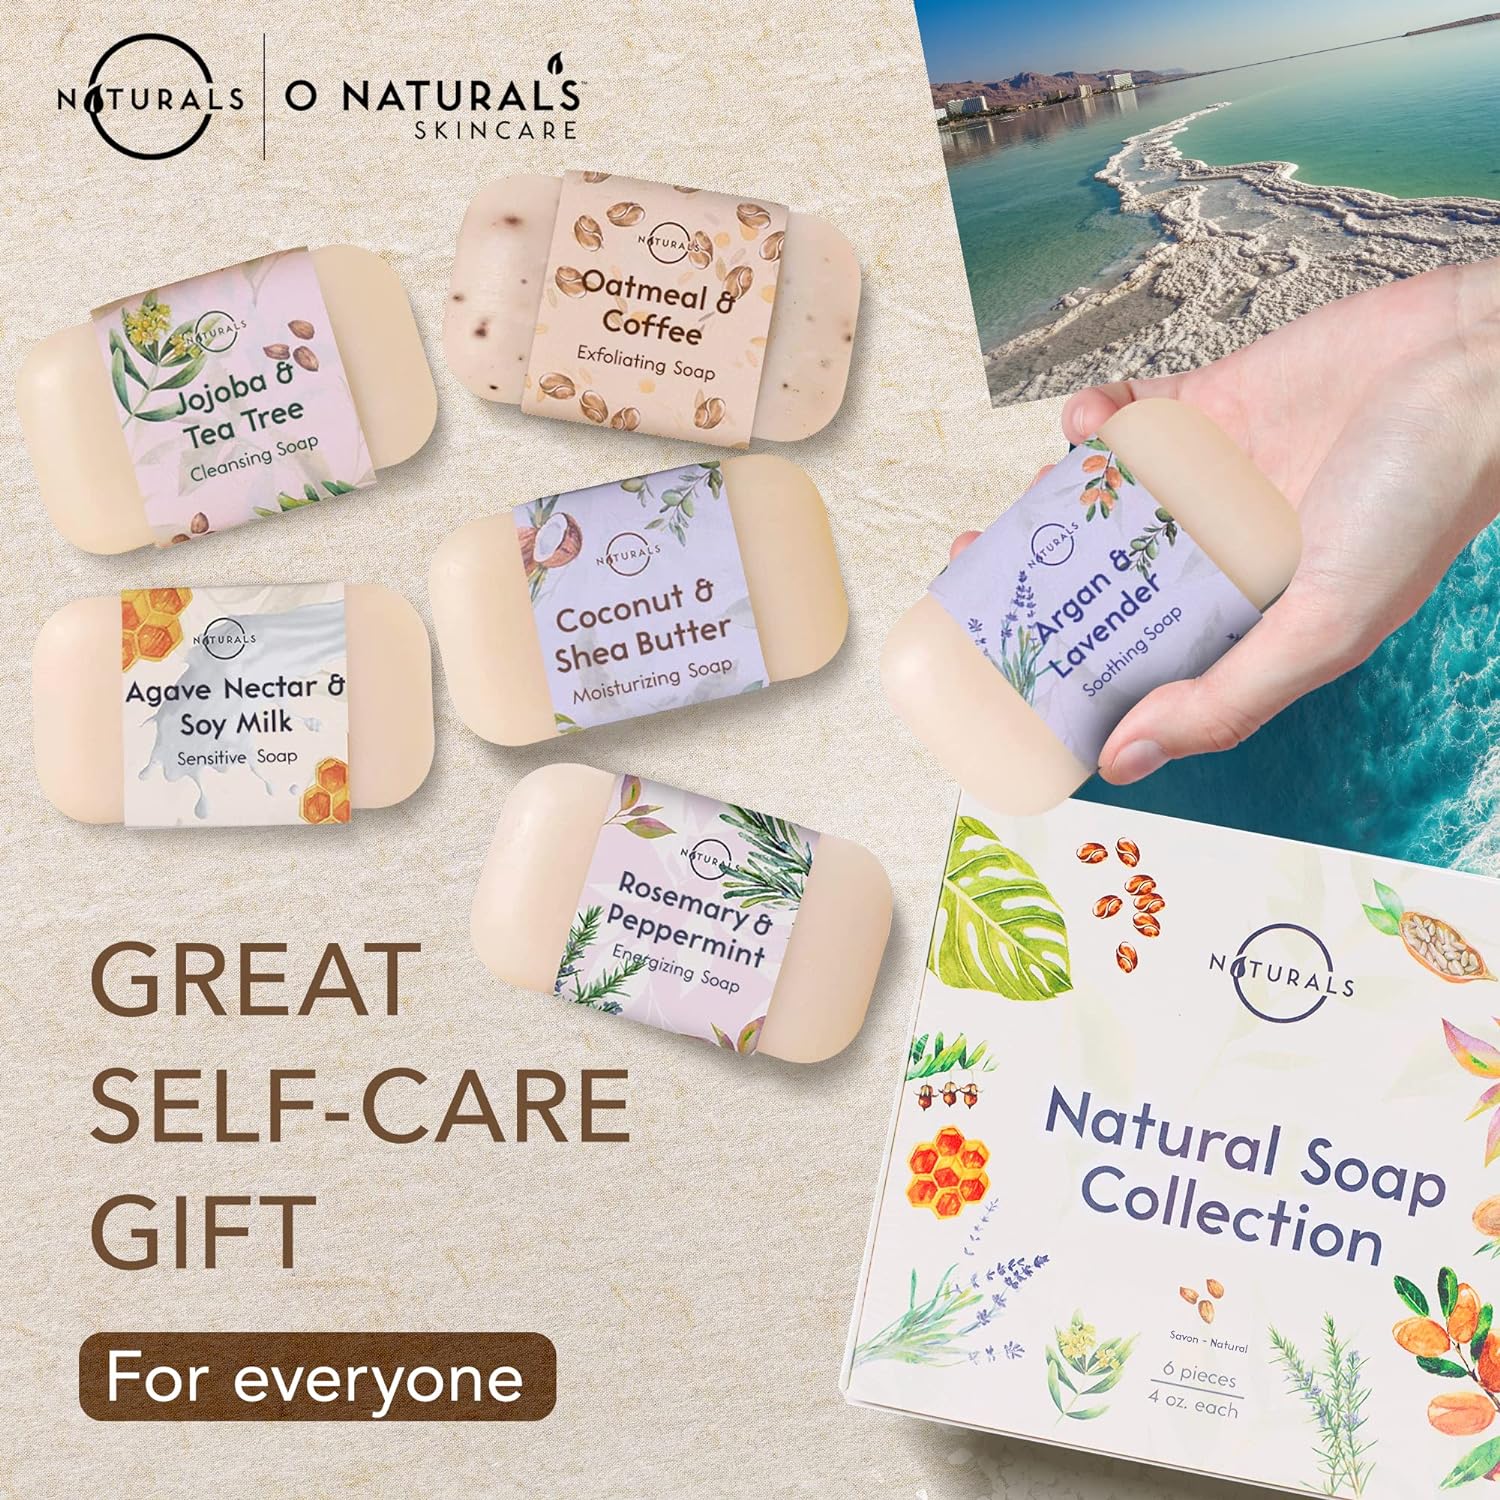 100% Natural Bar Soap - 6 Pieces